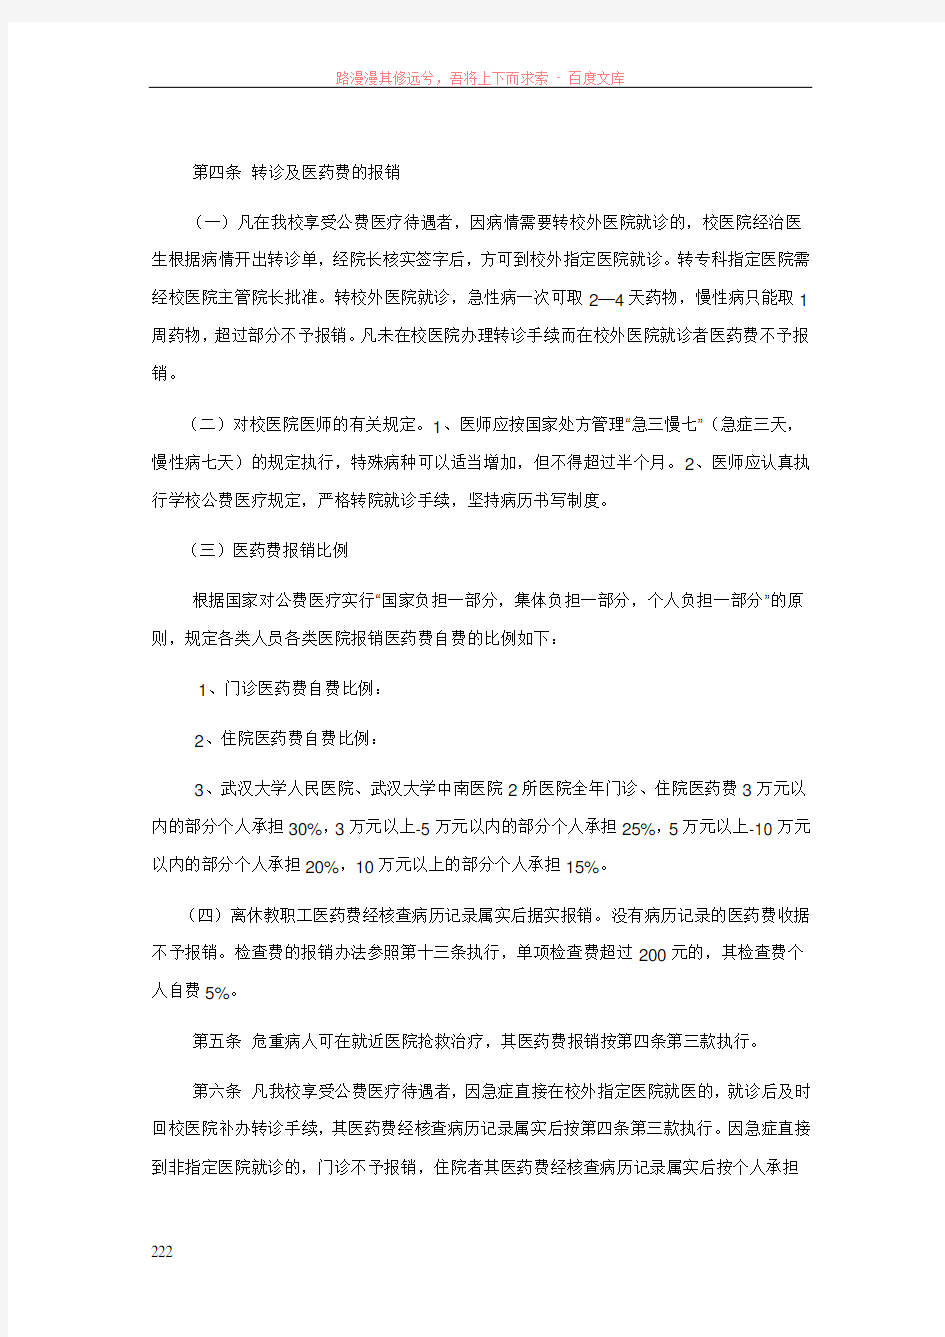 中南财经政法大学公费医疗管理办法(修订)